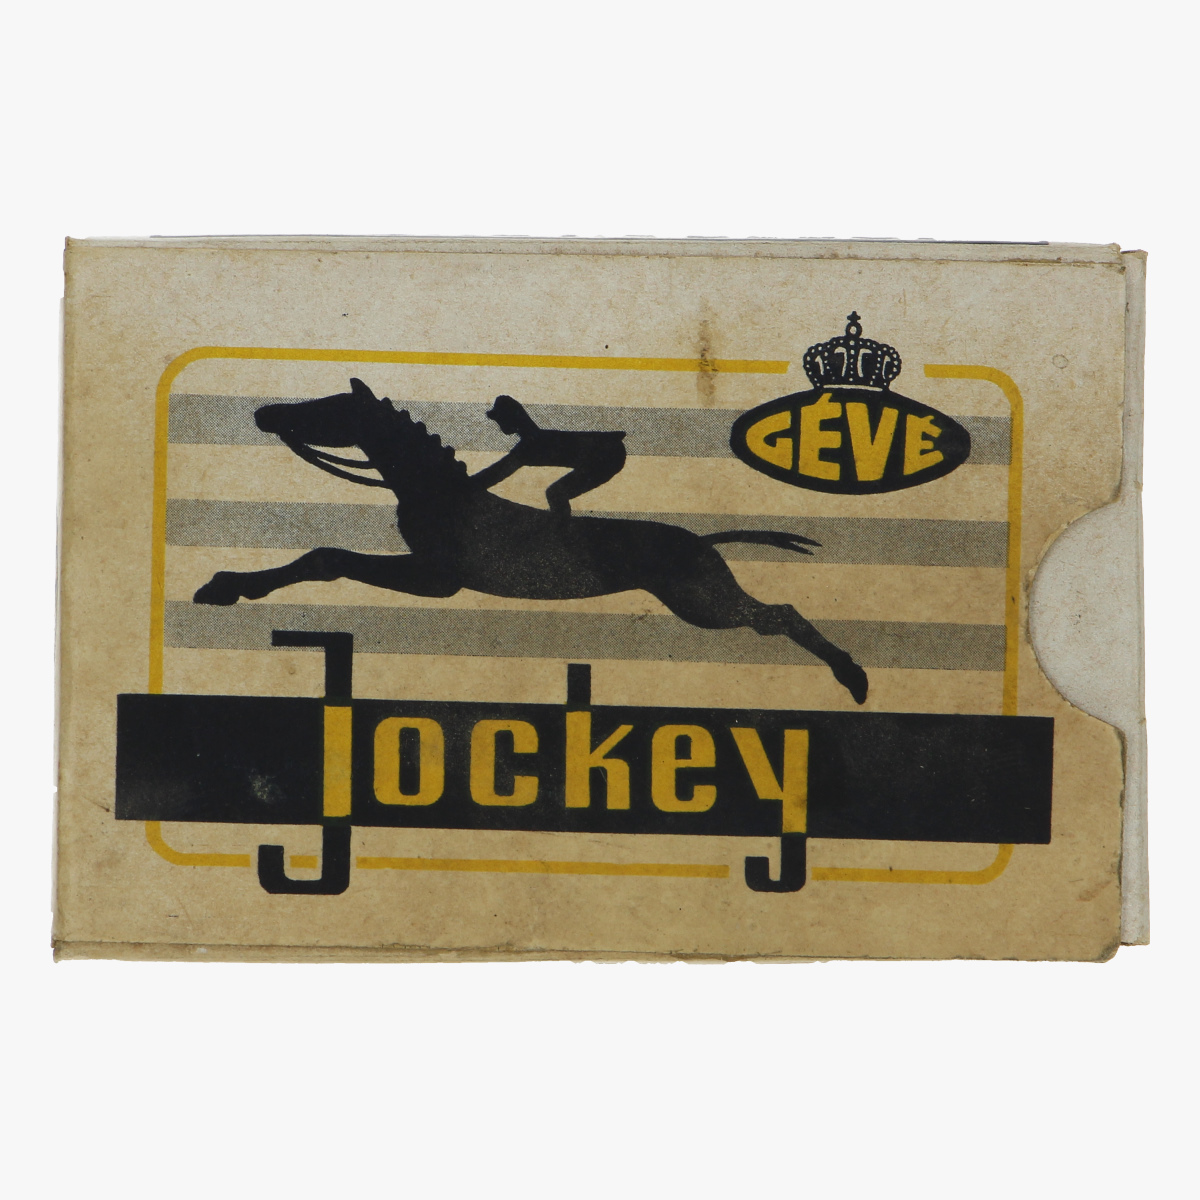 Afbeeldingen van oud spel kaarten jockey-Belge